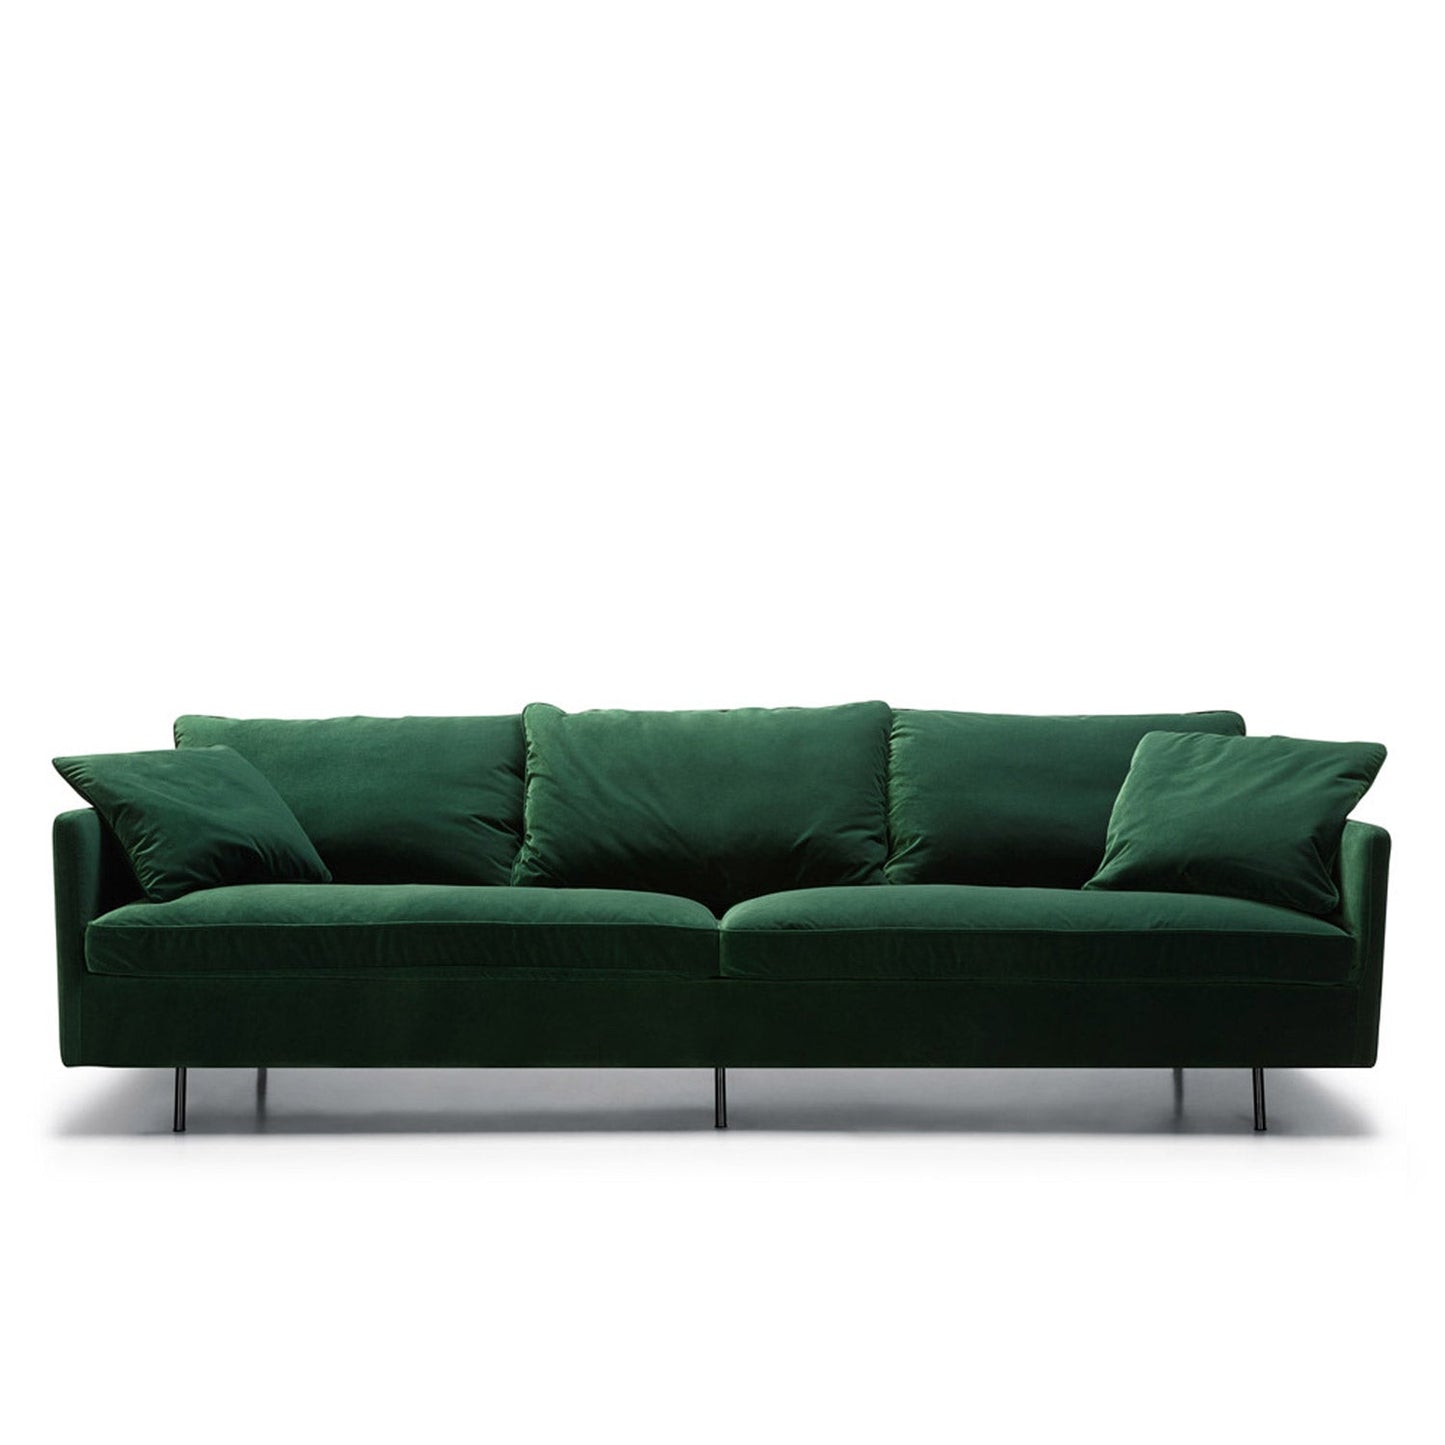 Julia 4-seter XL sofa, en del av kategorien 4-seter - At Home Interiør